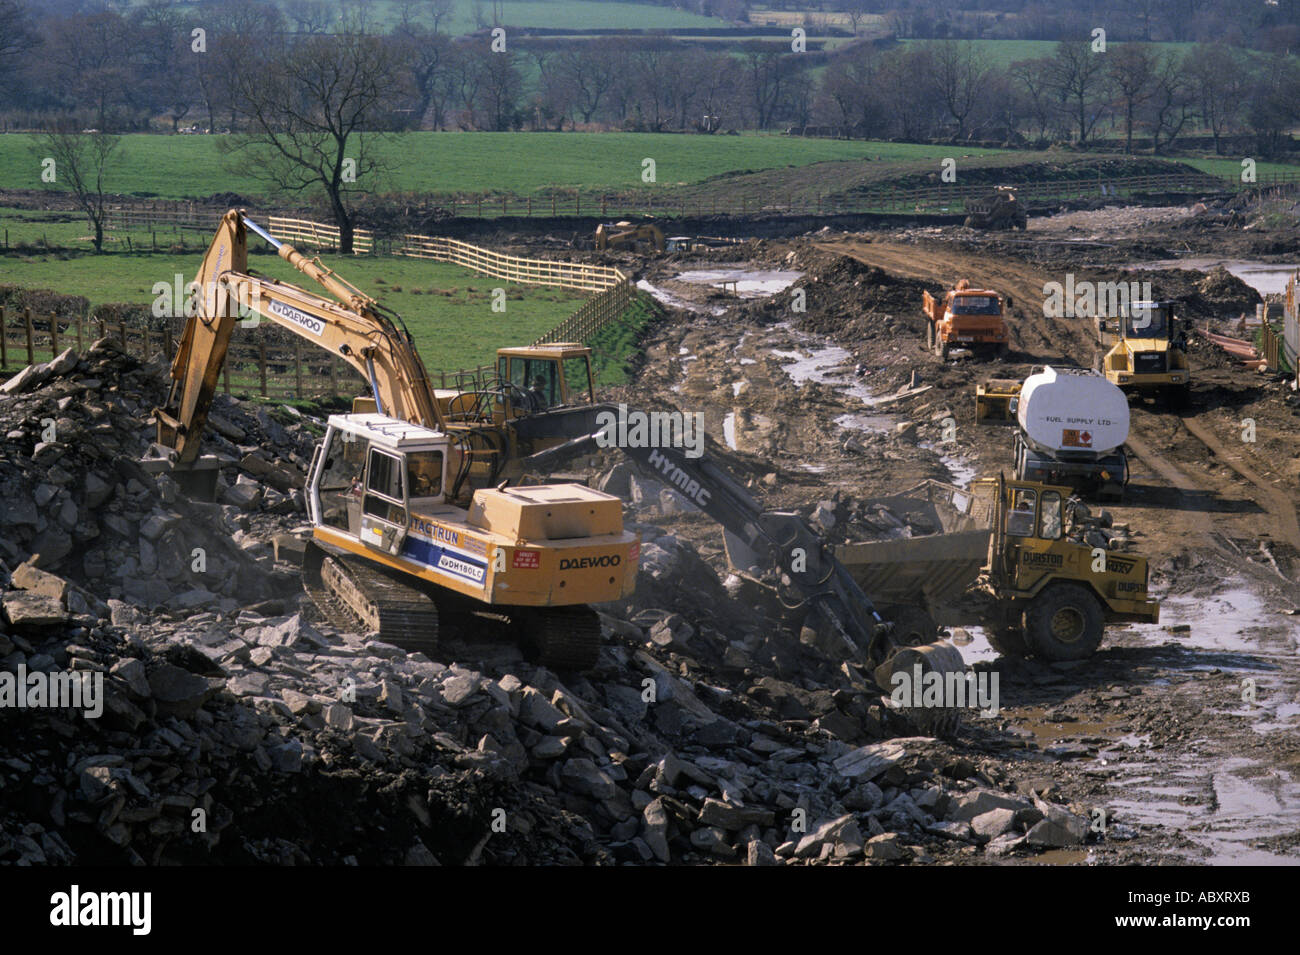 Chargement camion excavateur pendant la construction du chemin Caerphilly Pays de Galles UK Banque D'Images